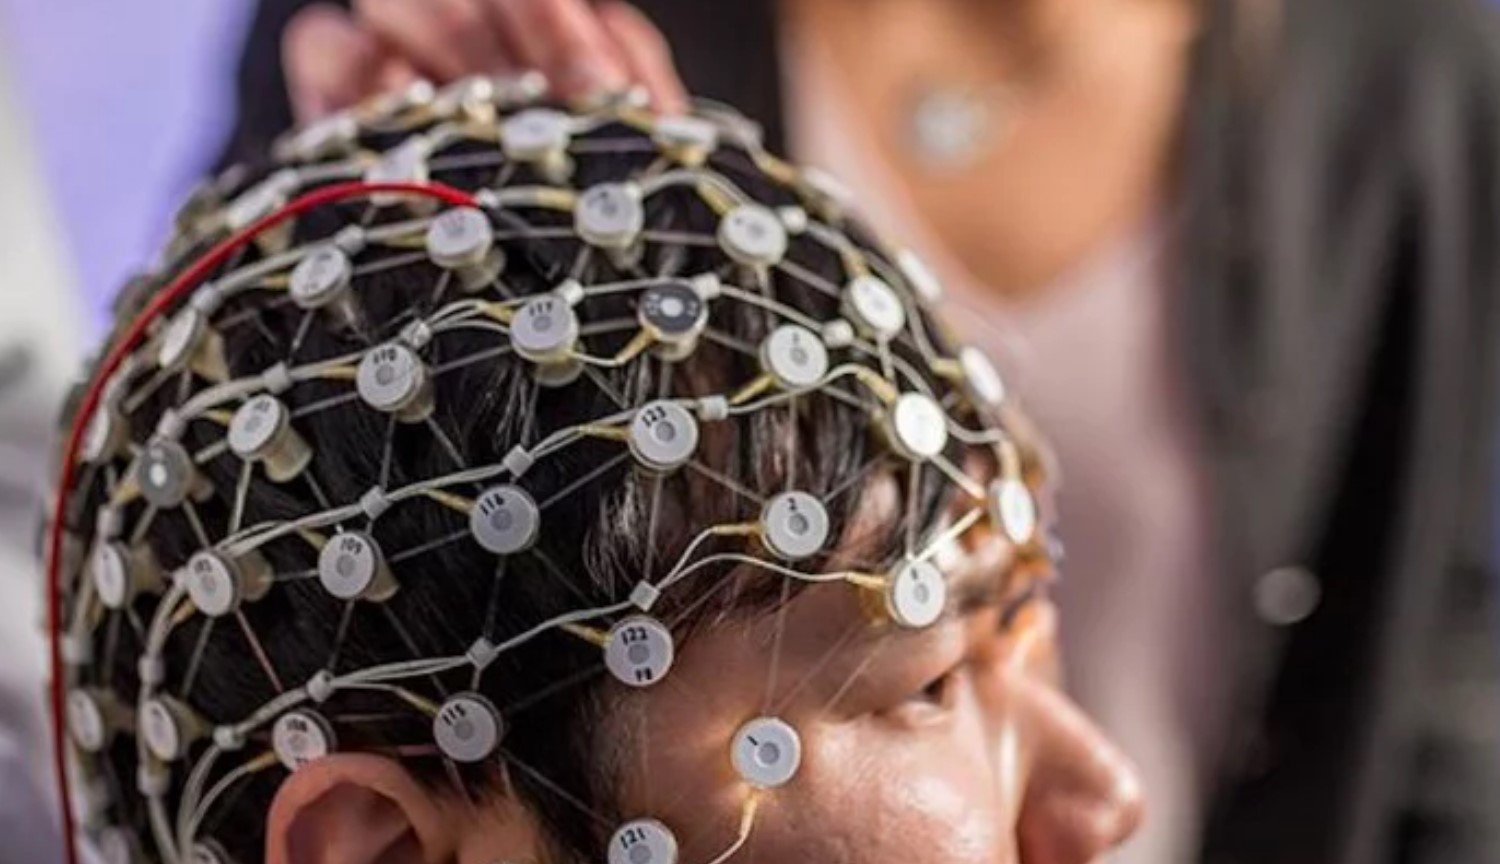 Elektryczna synchronizacja obszarów mózgu jest w stanie leczyć depresję